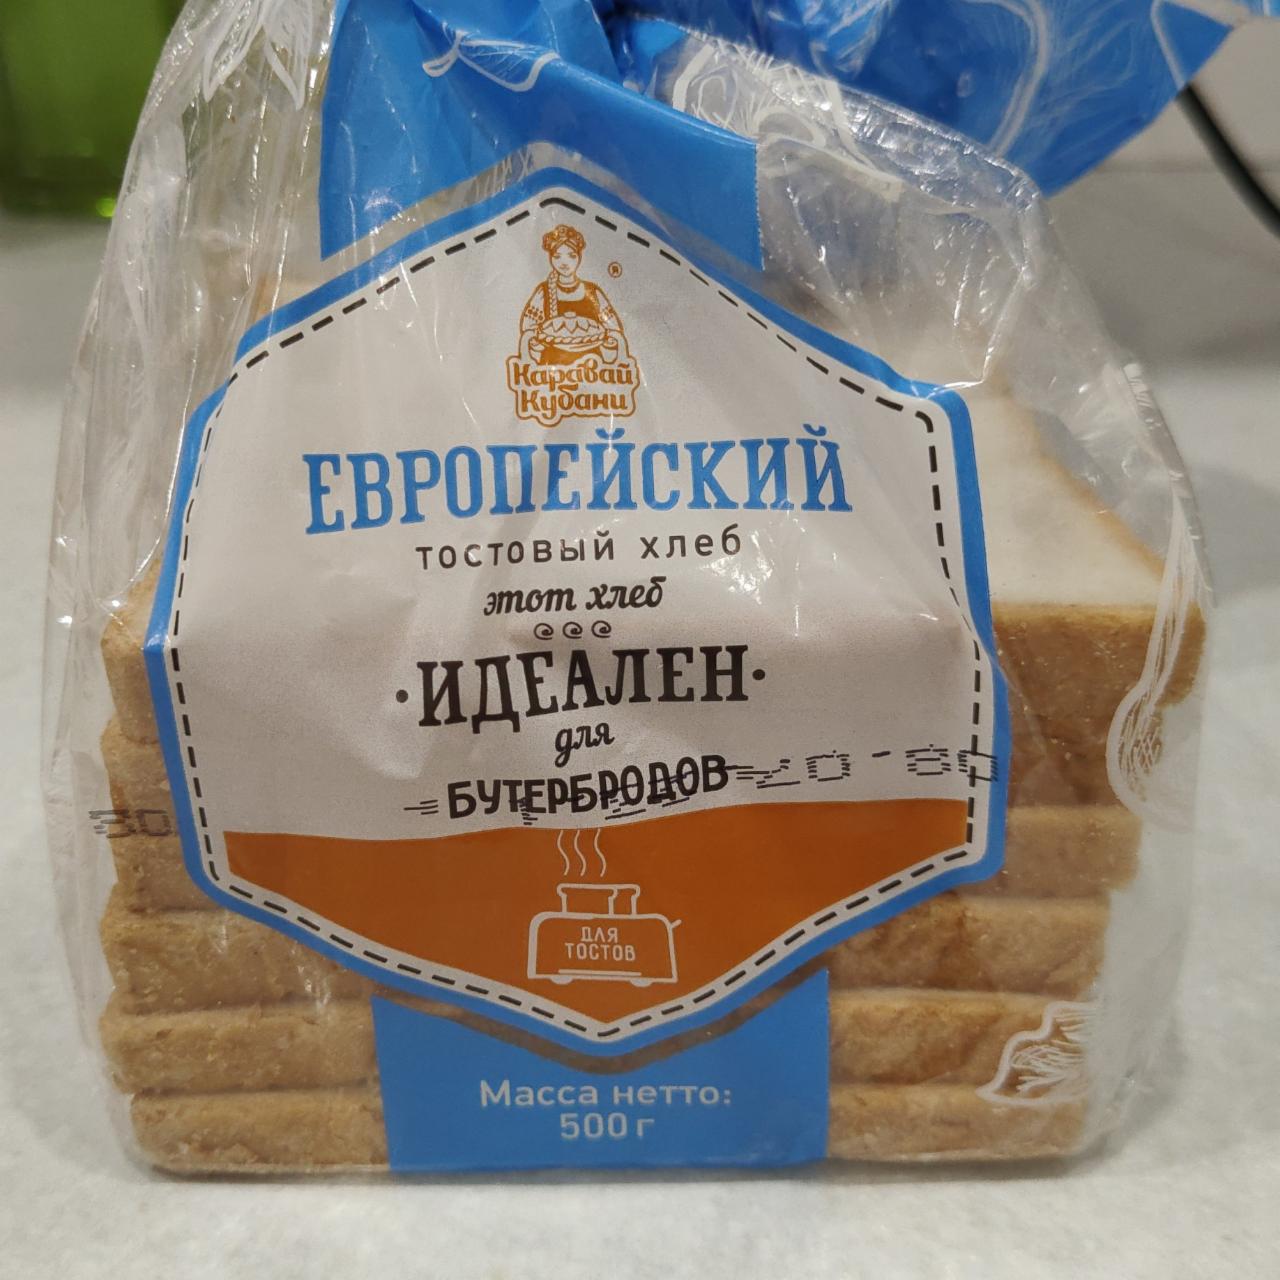 Фото - Европейский тостовый хлеб Каравай Кубани